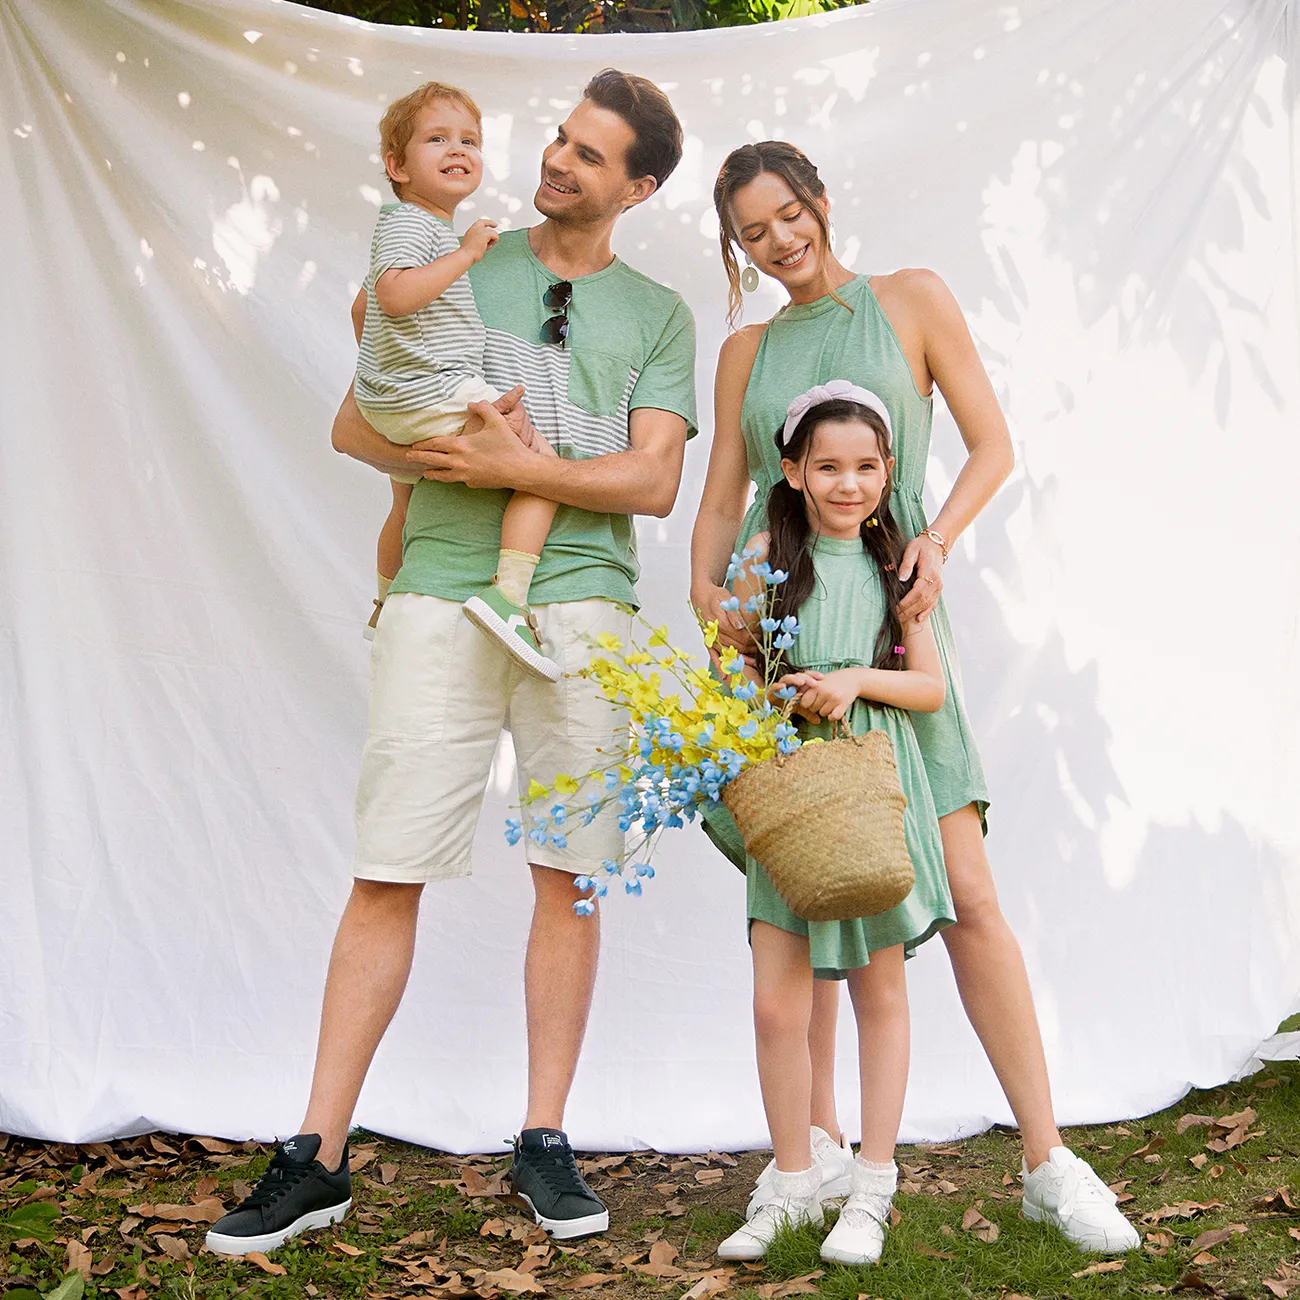 Muttertag Familien-Looks Kurzärmelig Familien-Outfits Sets grün big image 1